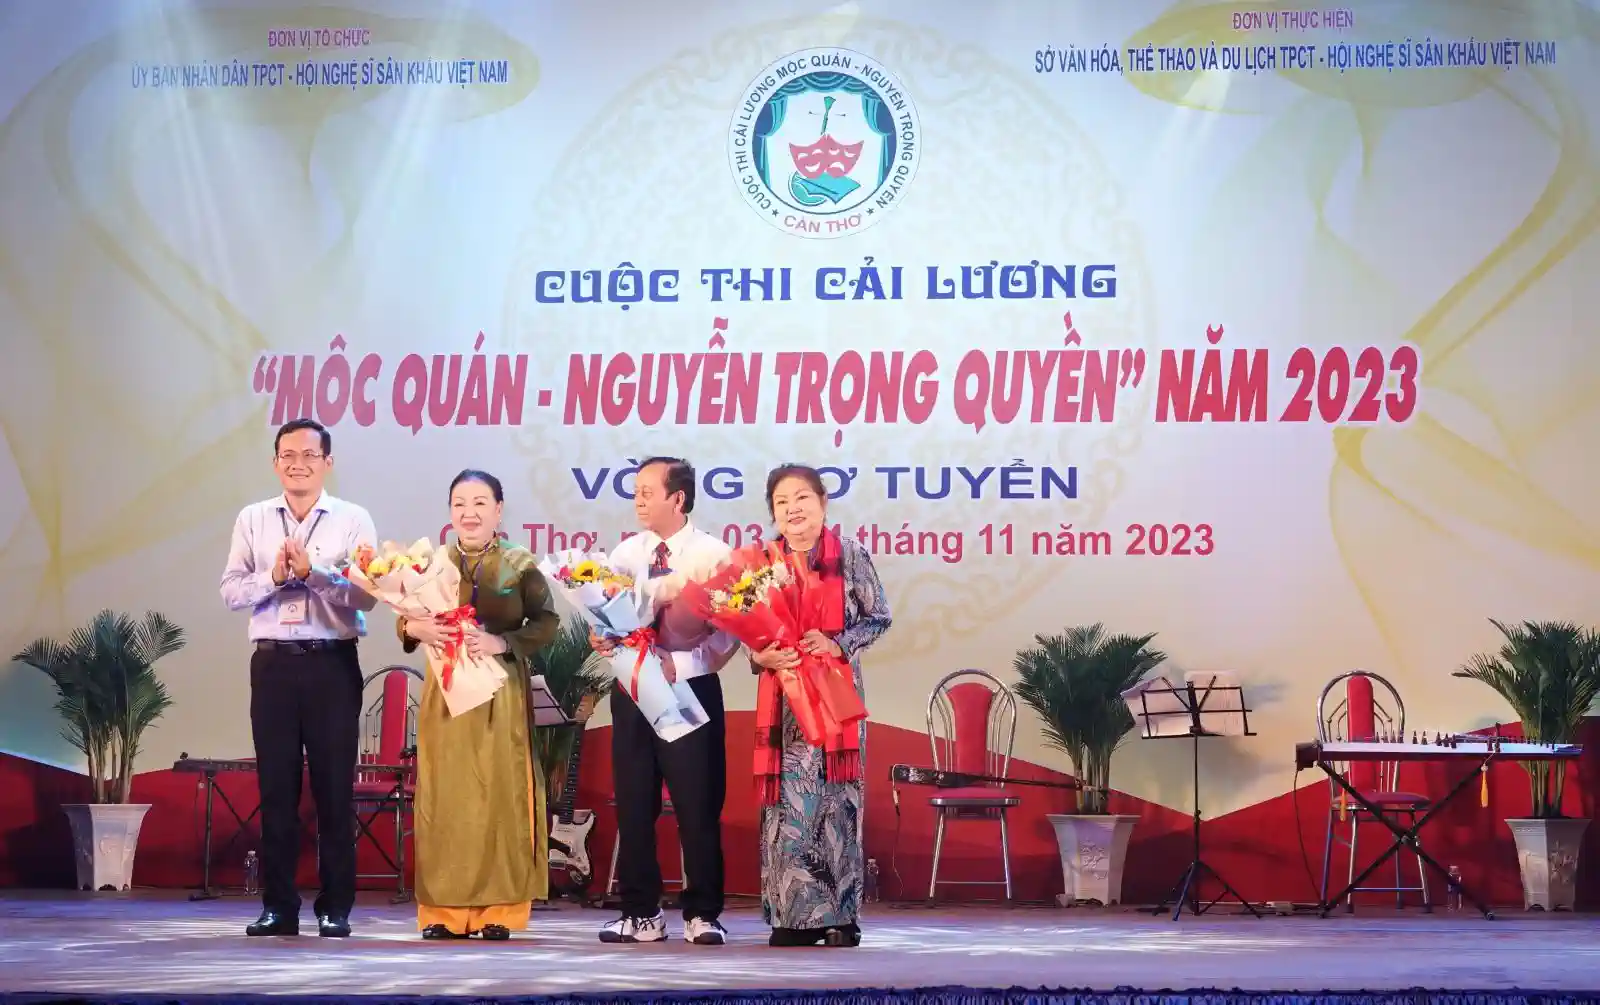 Sơ tuyển Cuộc thi cải lương "Mộc Quán - Nguyễn Trọng Quyền" năm 2023